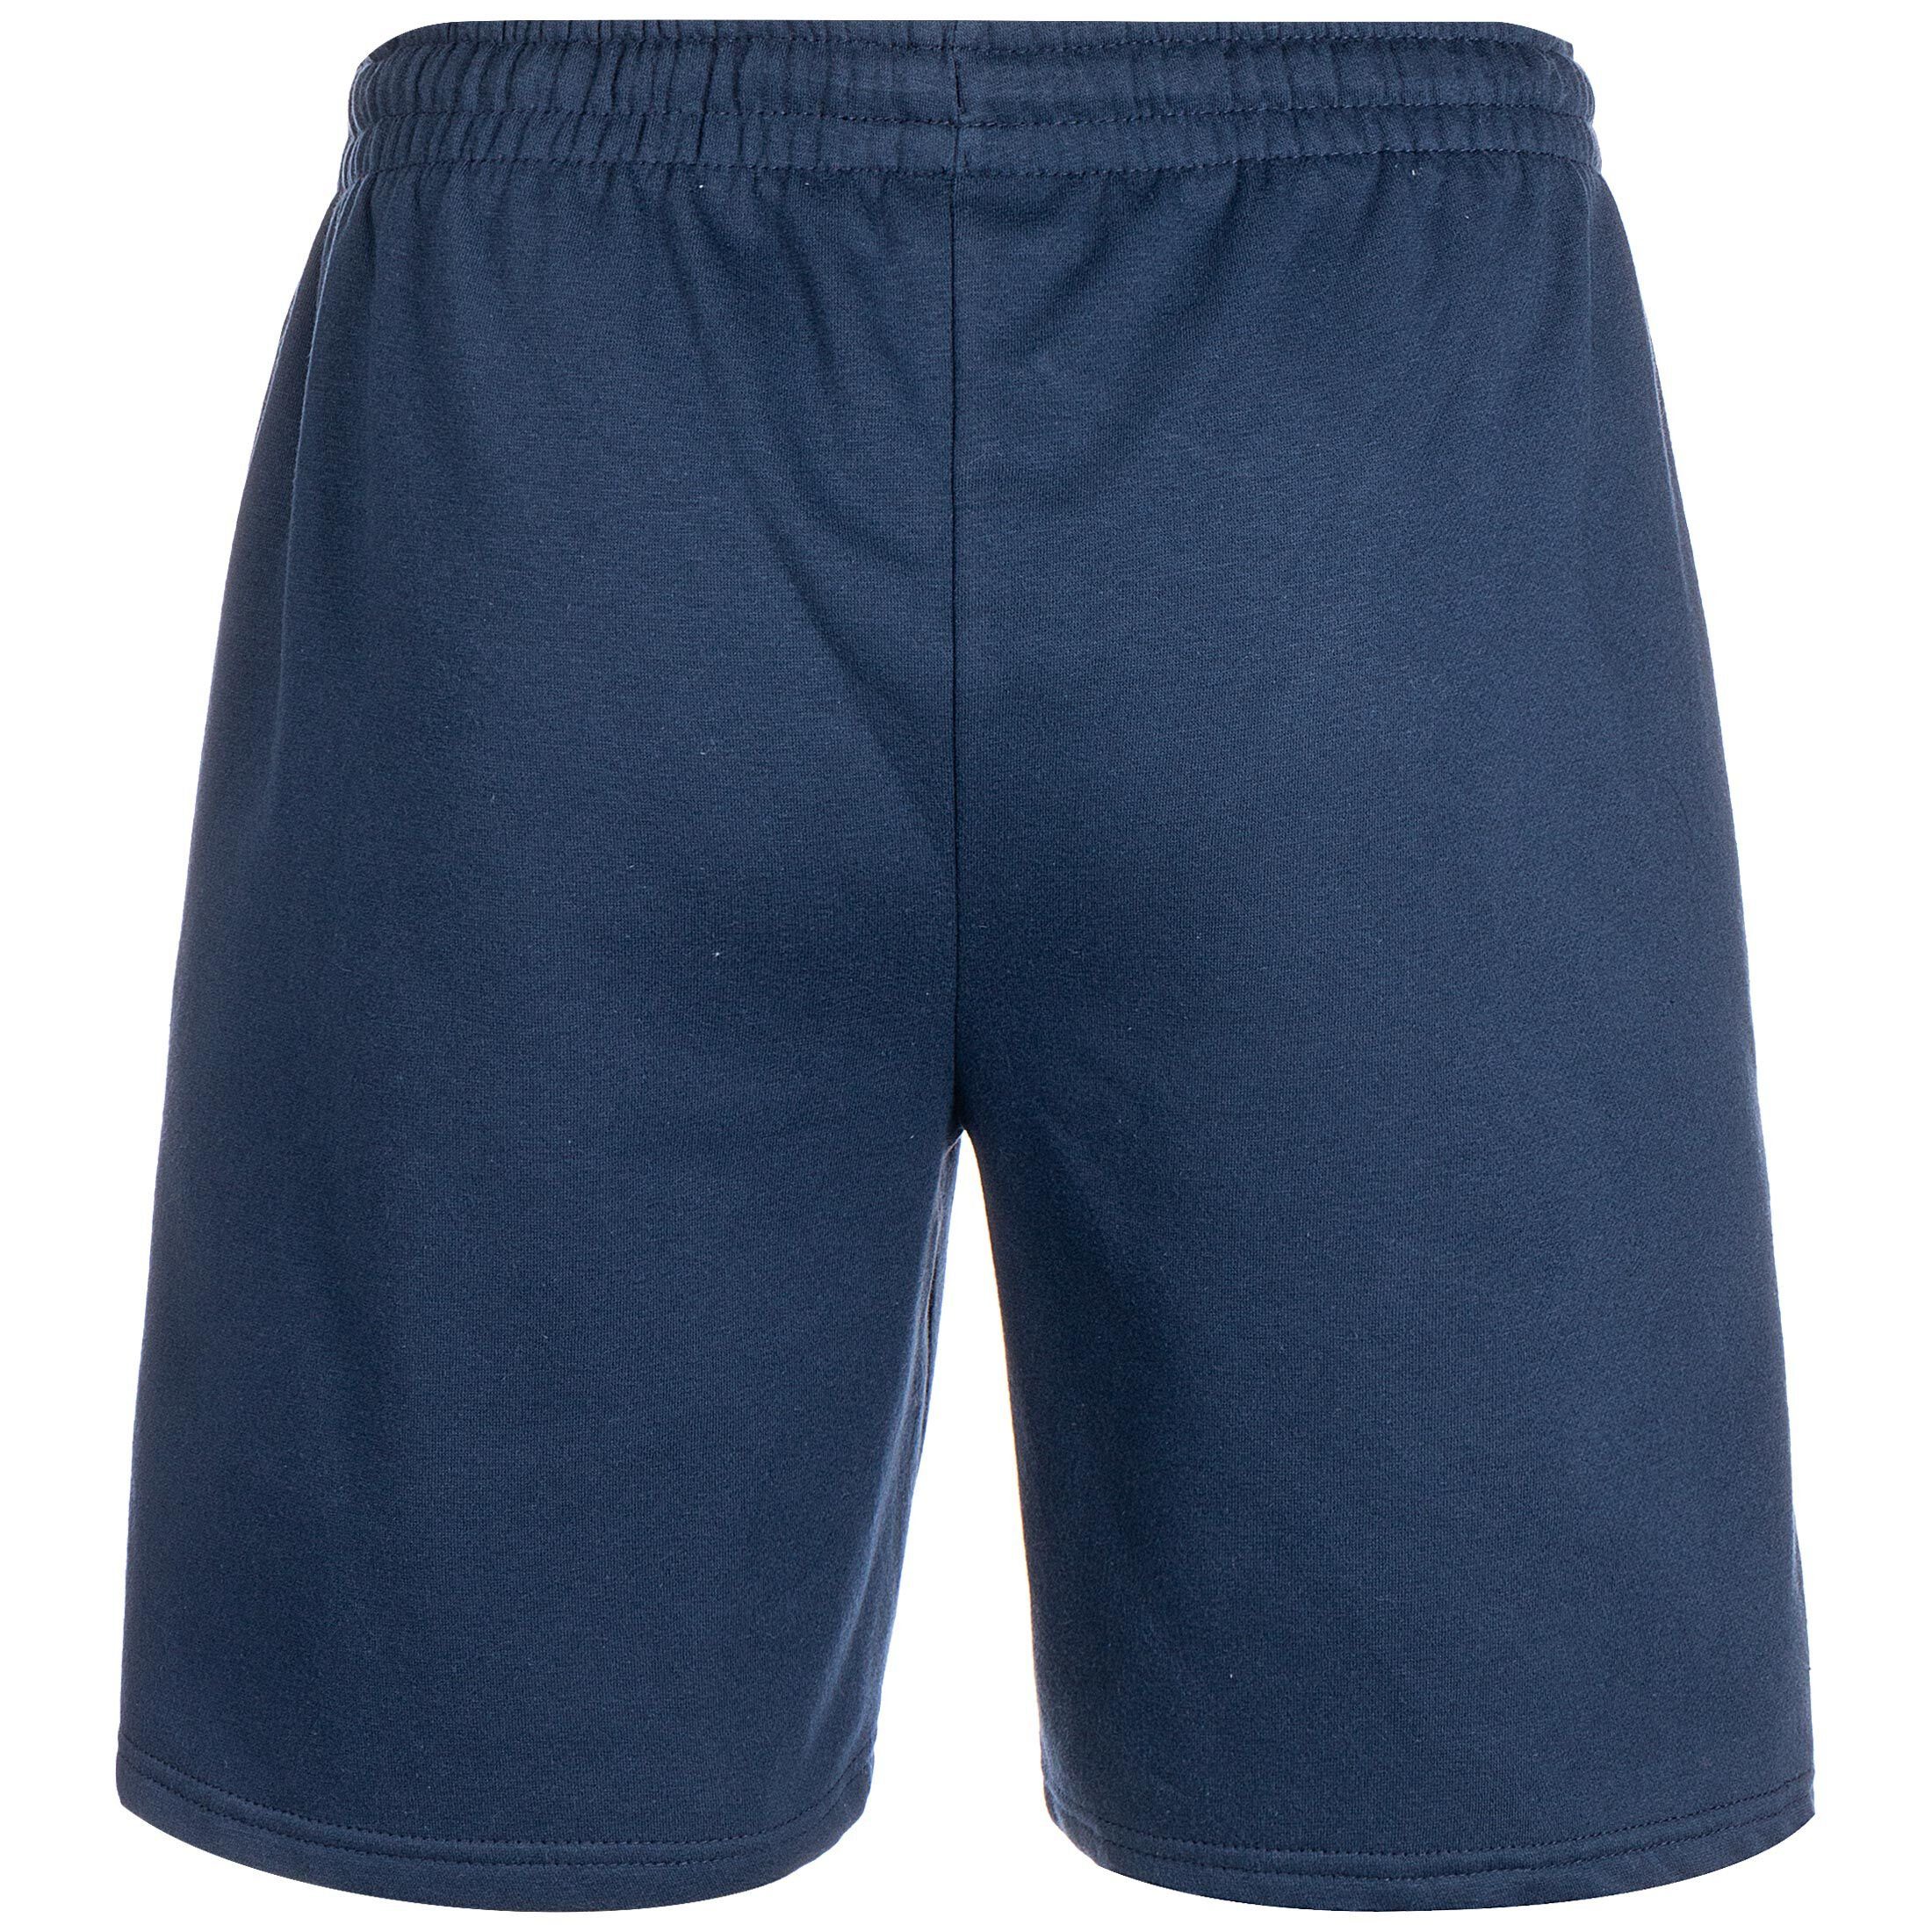 Shorts / blau hummel Trainingsshorts dunkelblau Herren hmlACTIVE